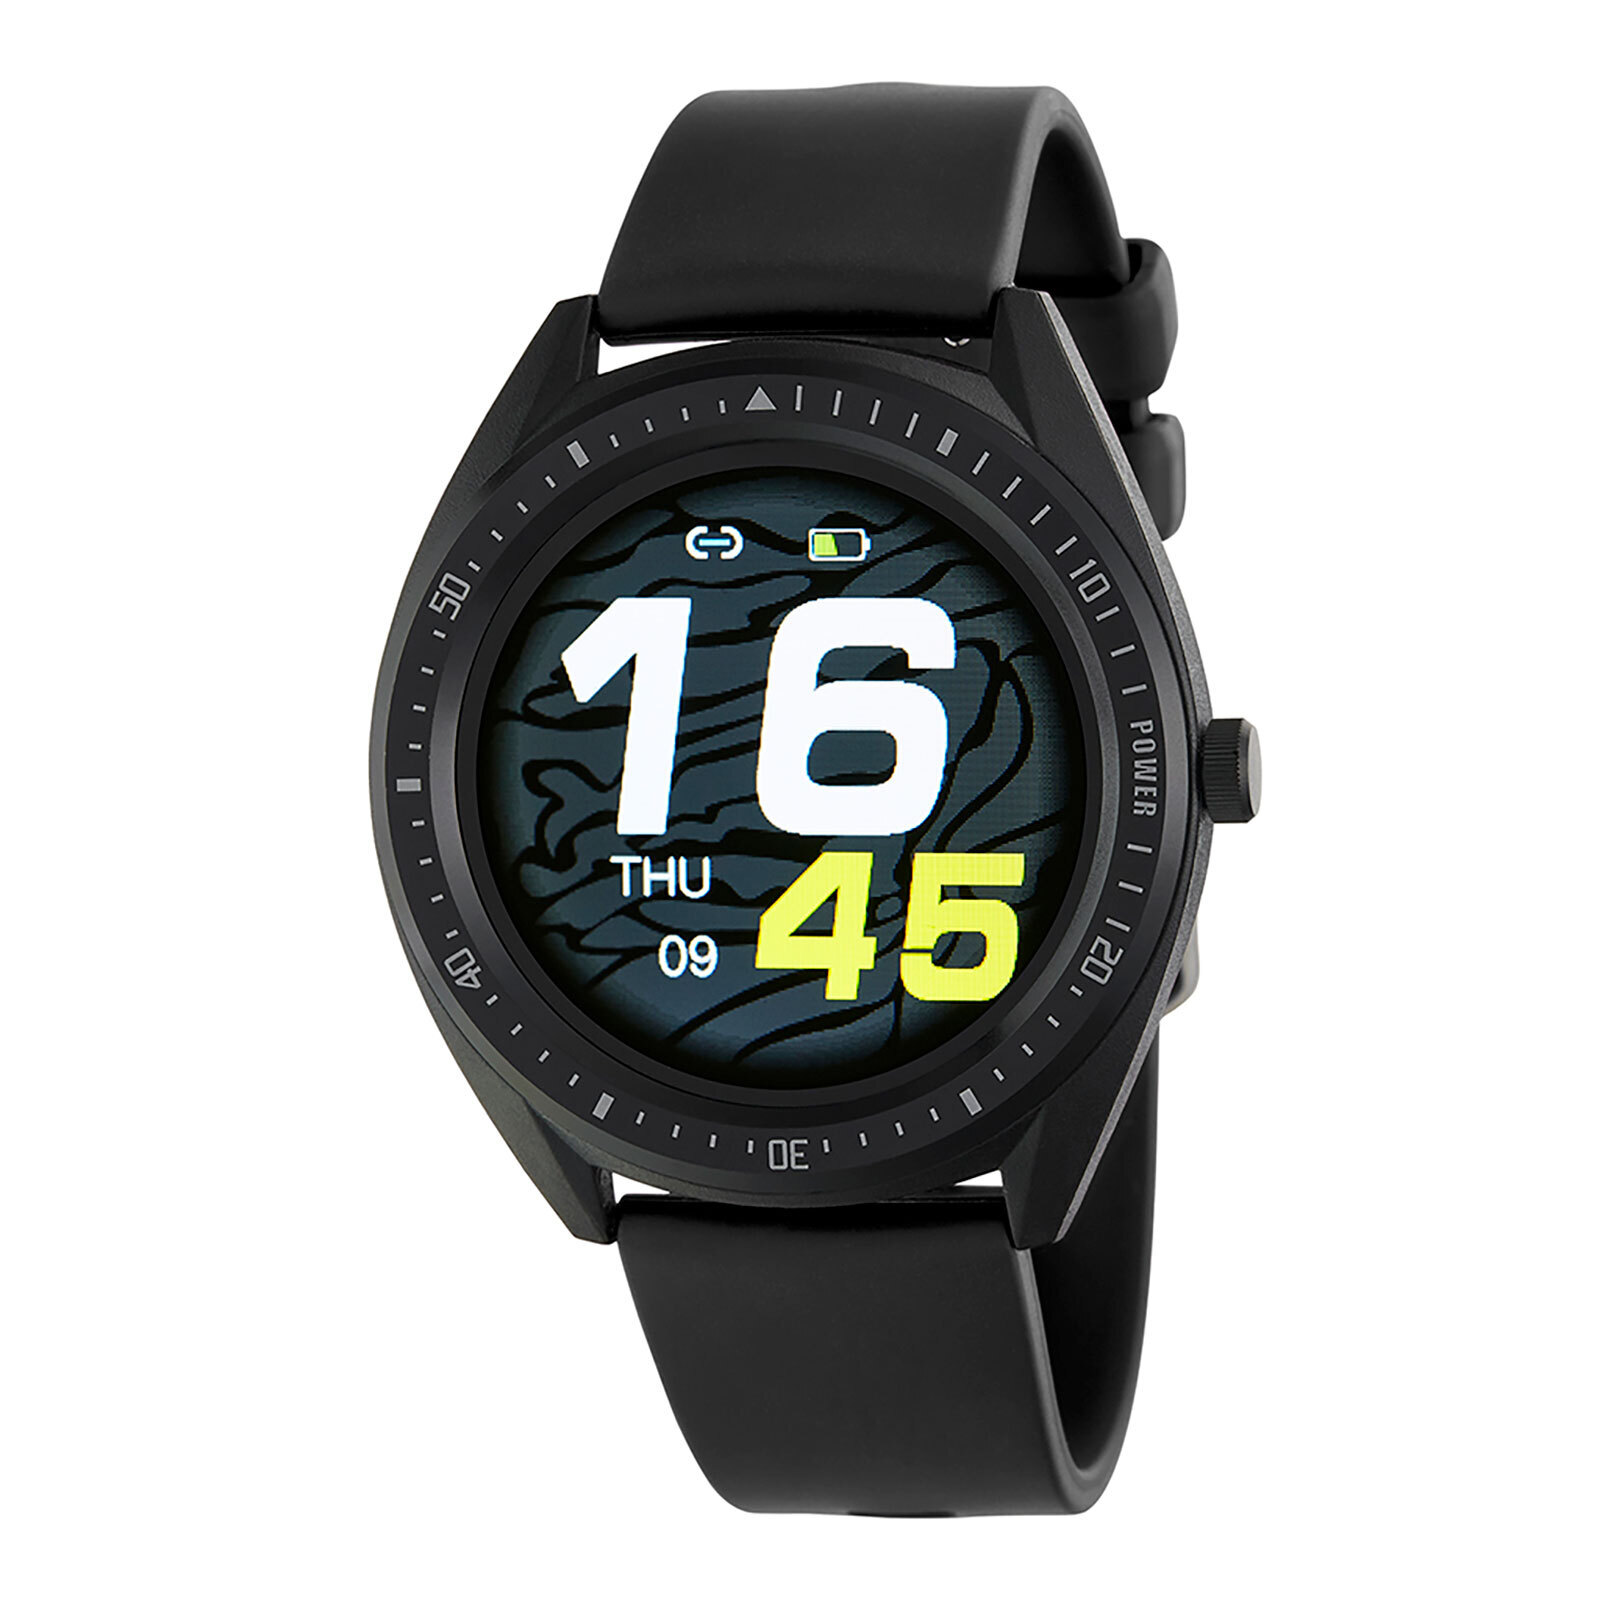 Marea Smart Watch har en standby-tid på 20 dagar!